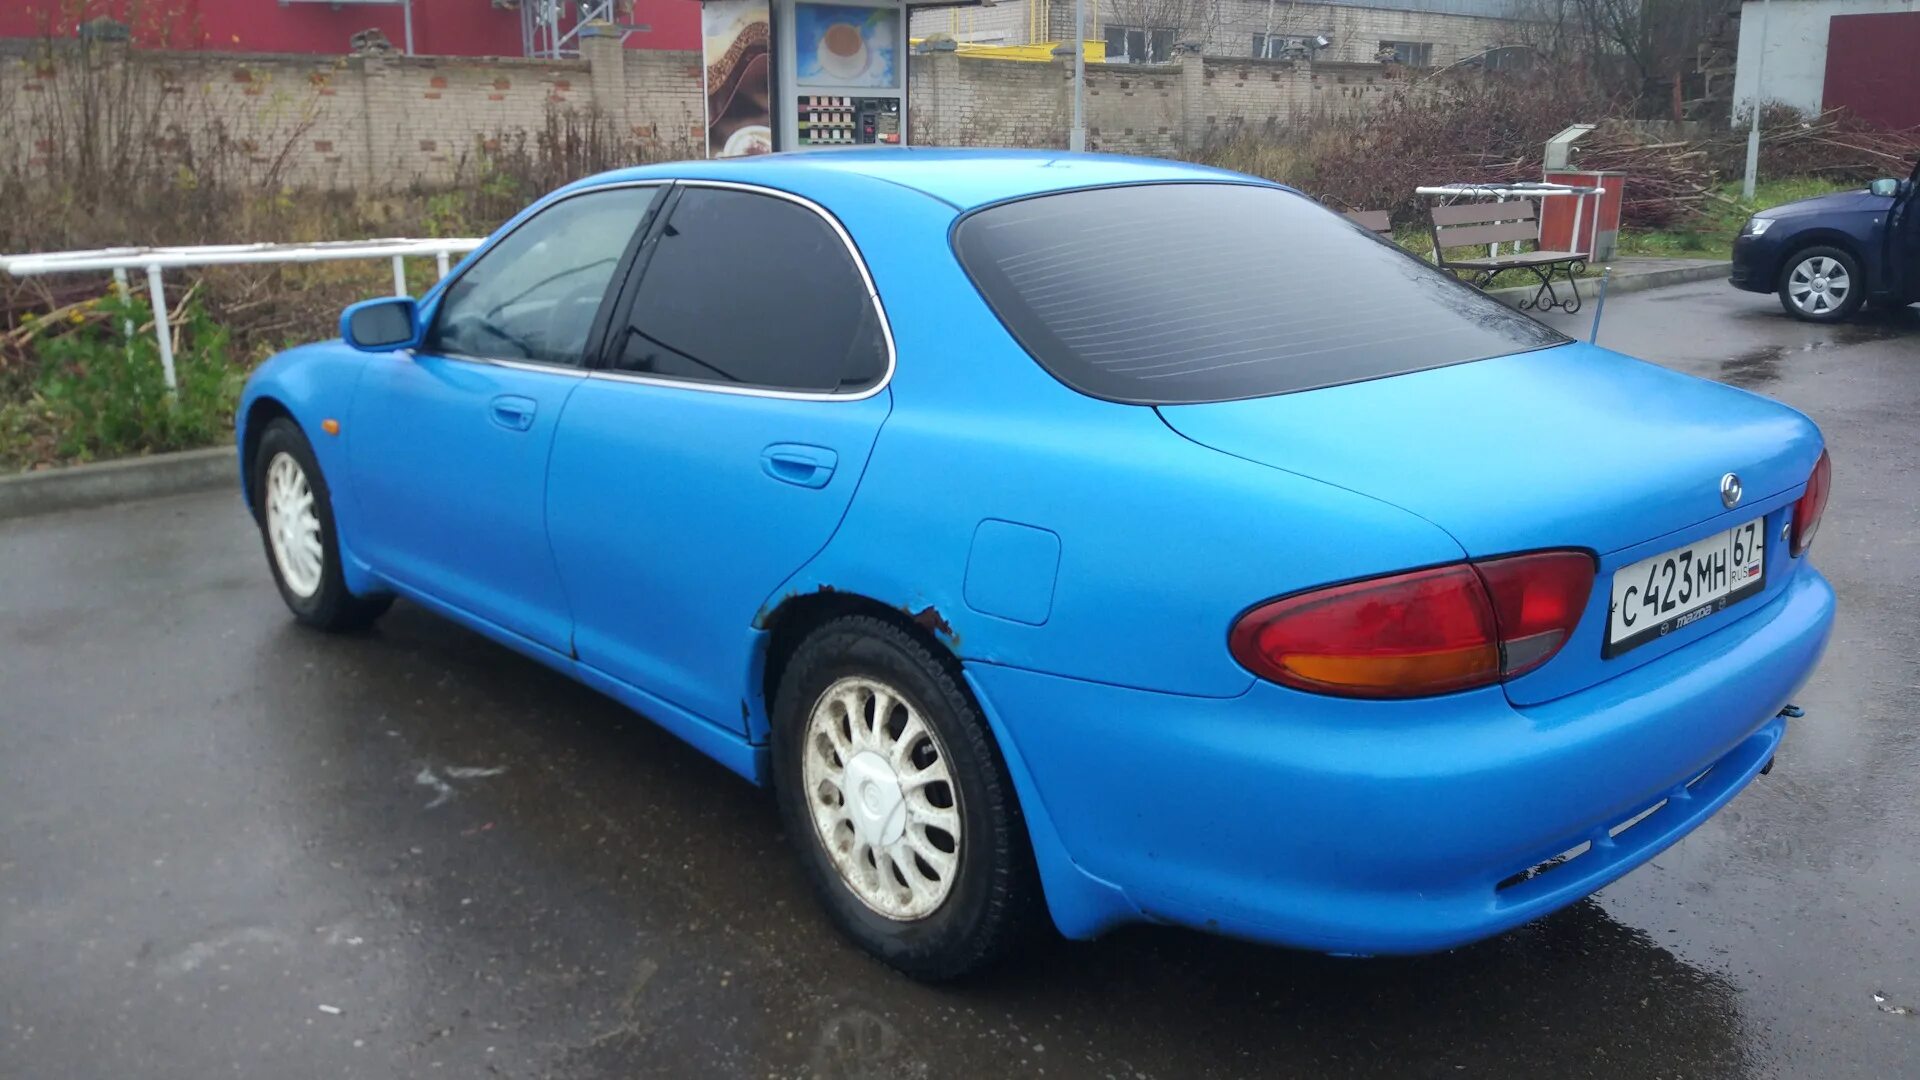 Mazda xedos 6. Мазда Кседос 1996. Мазда Кседос 6 синяя. Мазда Кседос 6 2.0. Куплю мазду кседос